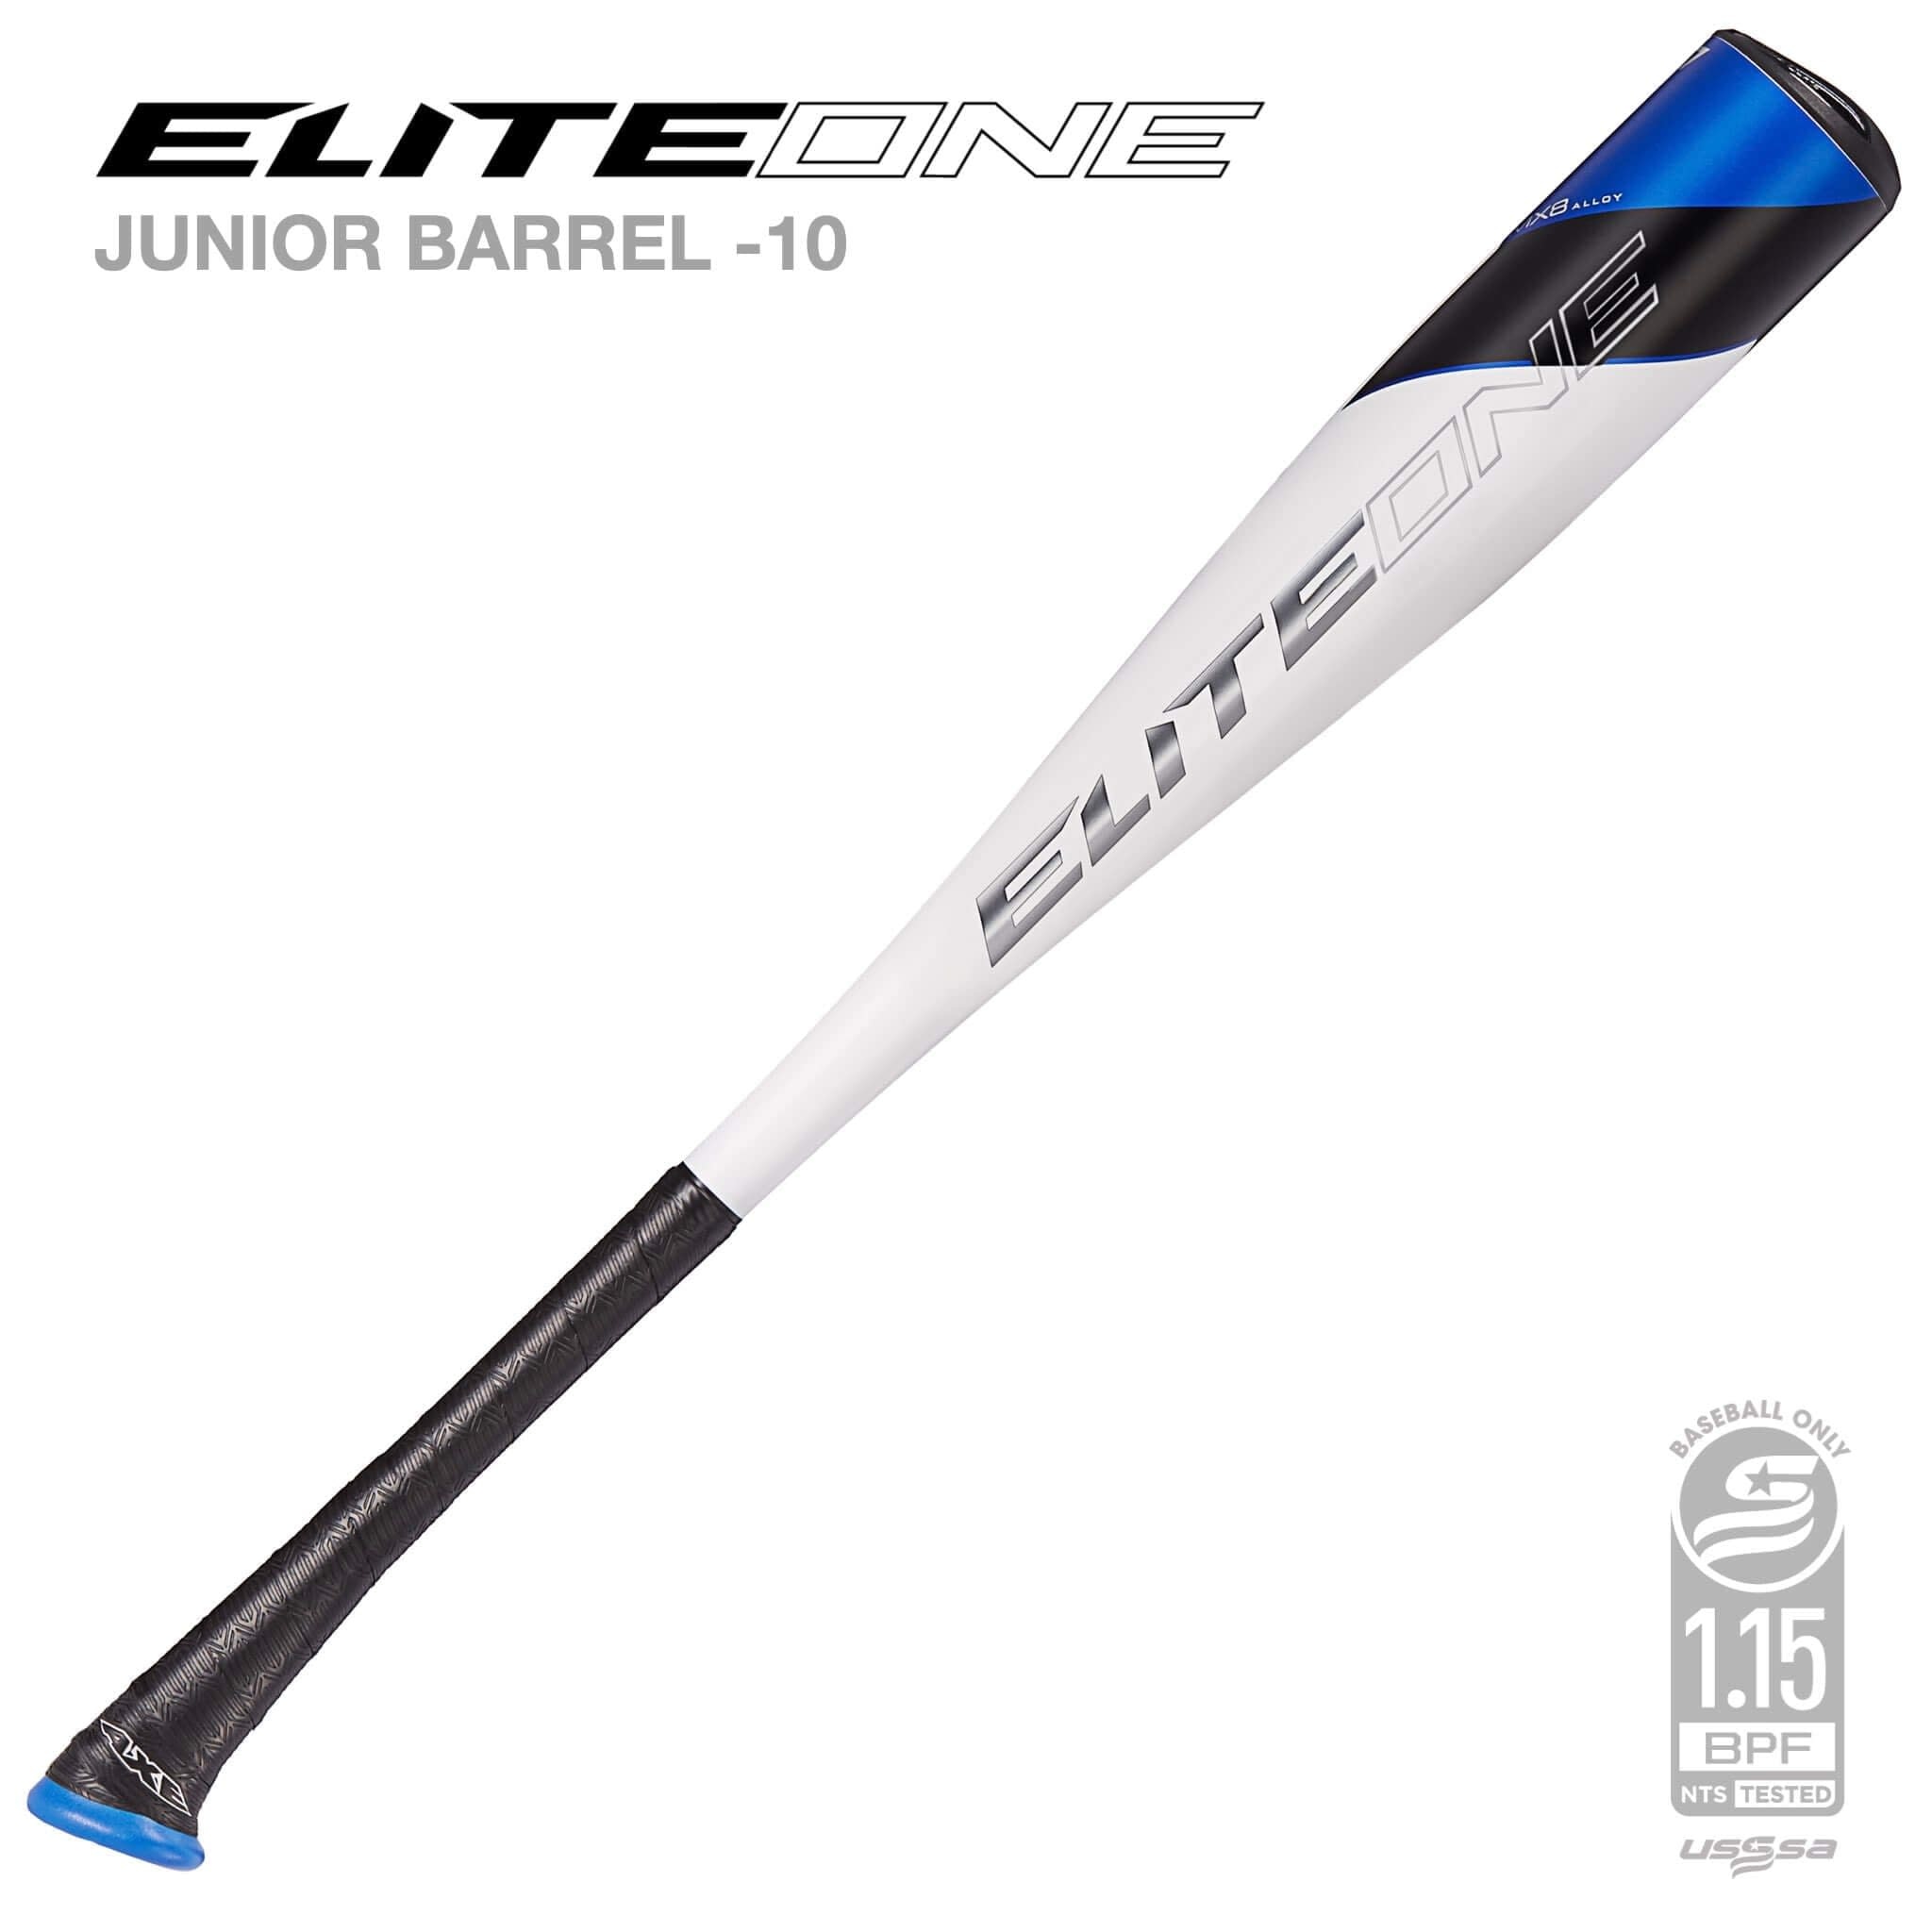 Axe bat 2022 Elite One JR Big barrel (-10) 2 3/4'' USSSA baseball bat